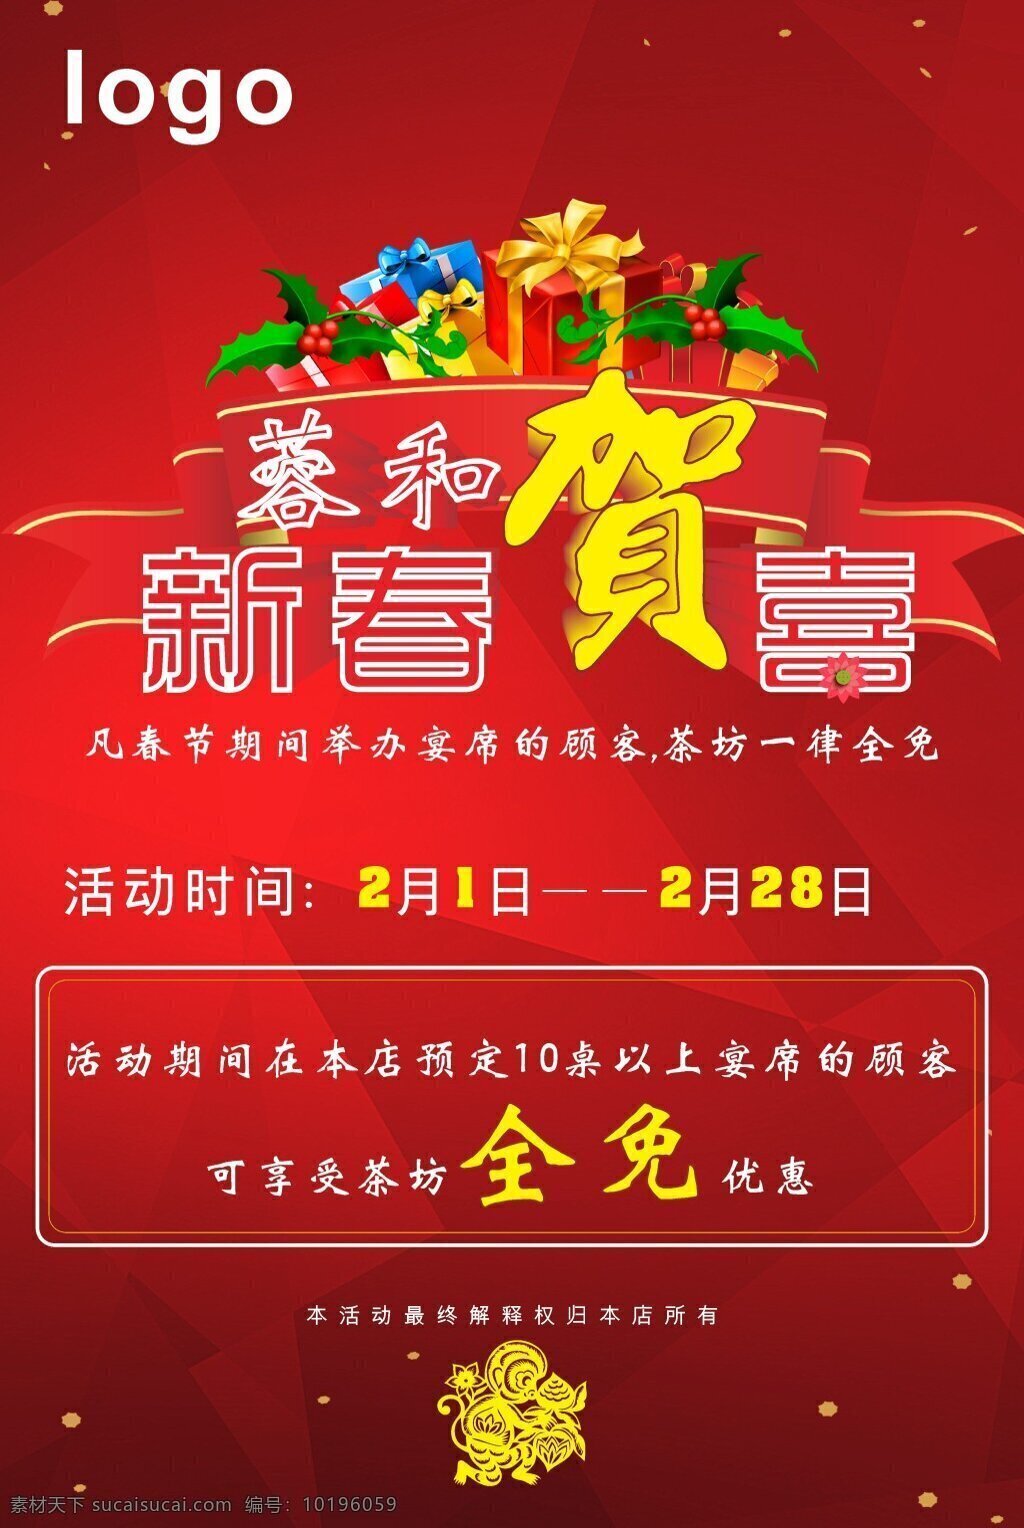 新春贺喜 海报 猴年 2016 春节海报 春节 红色背景